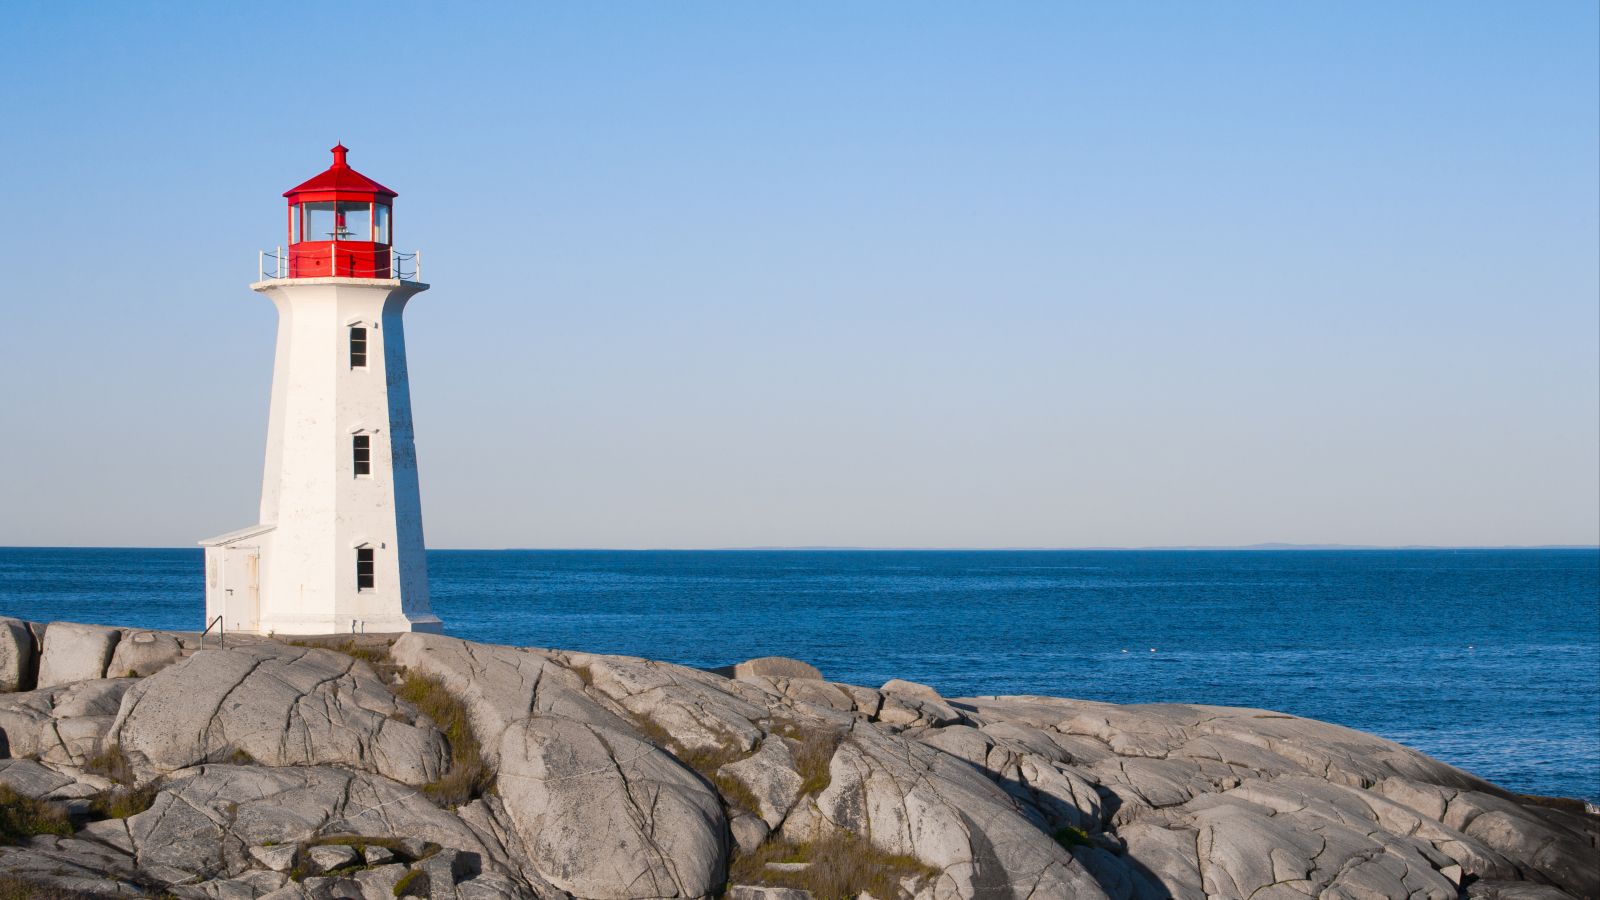 Ein weißer Leuchtturm mit rotem Dach steht auf einem Felsen vor blauem Meer mit blauem Himmel.